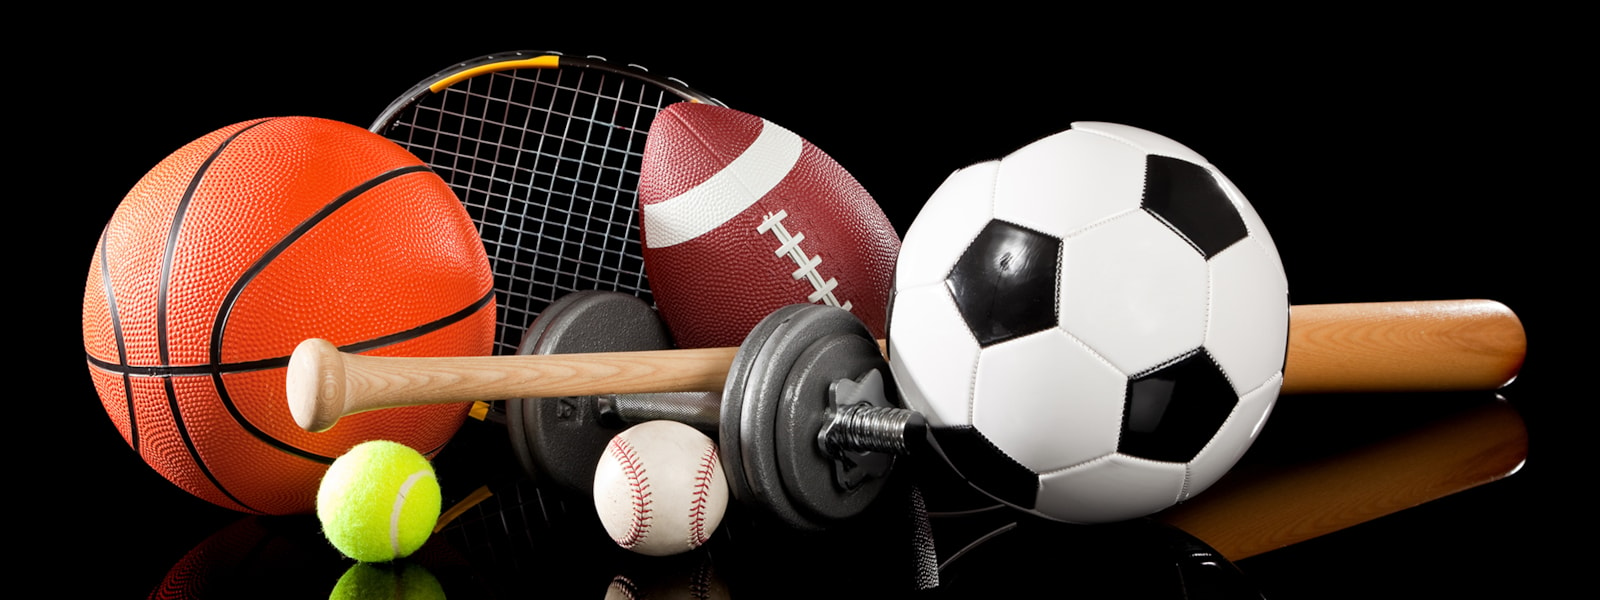 basketball, tennis ball & raquet, weight, football, baseball, bat, soccer ball